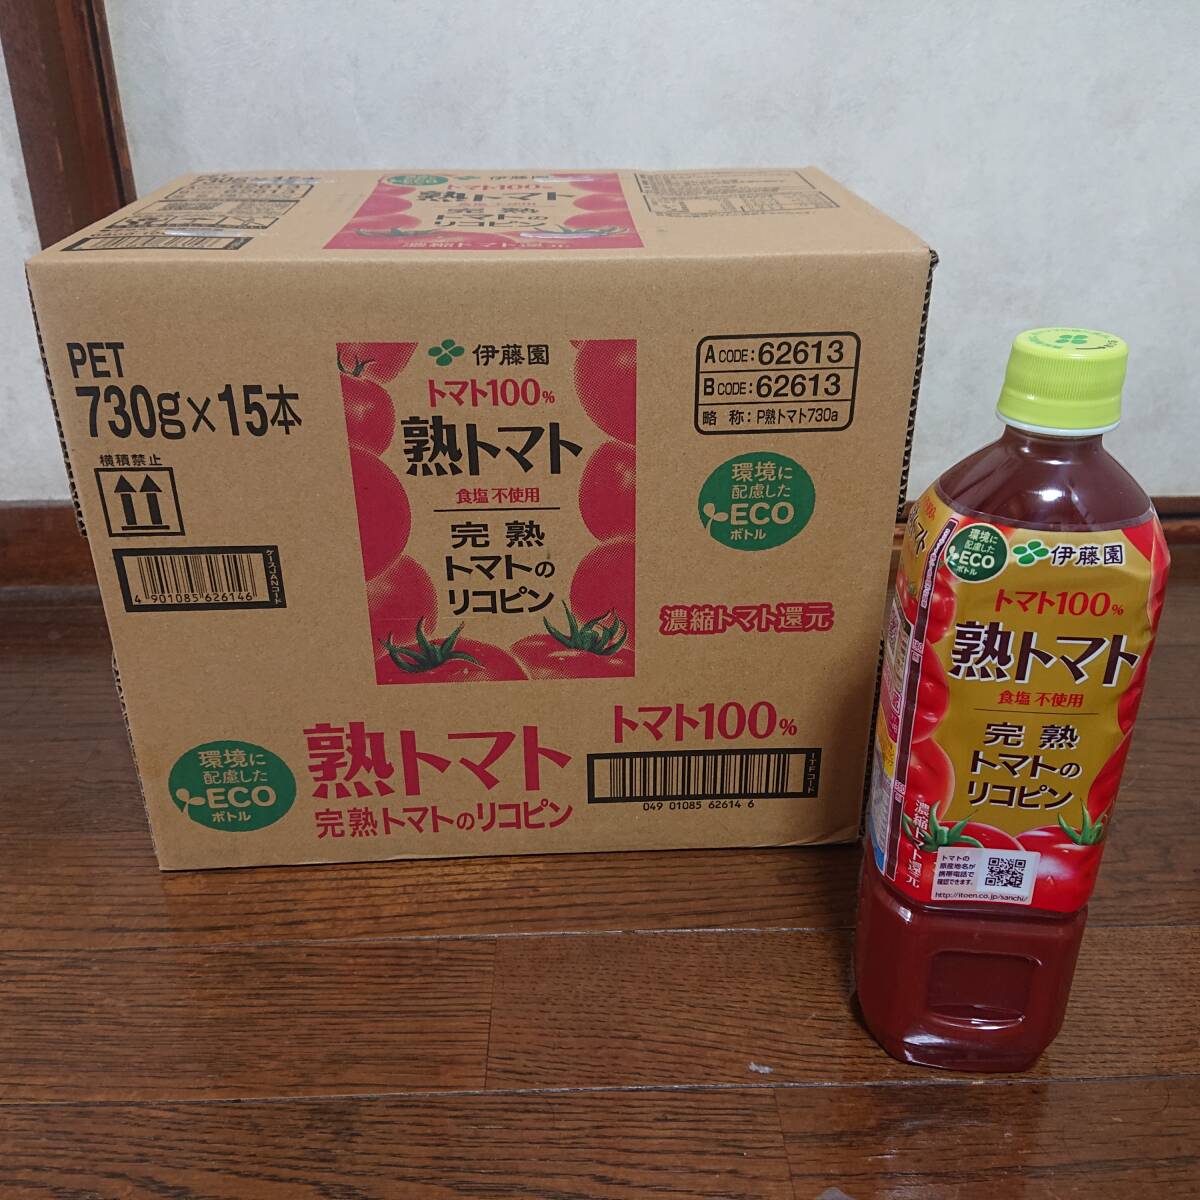 . wistaria . tomato juice . tomato 730g 15 pcs set (1 case )